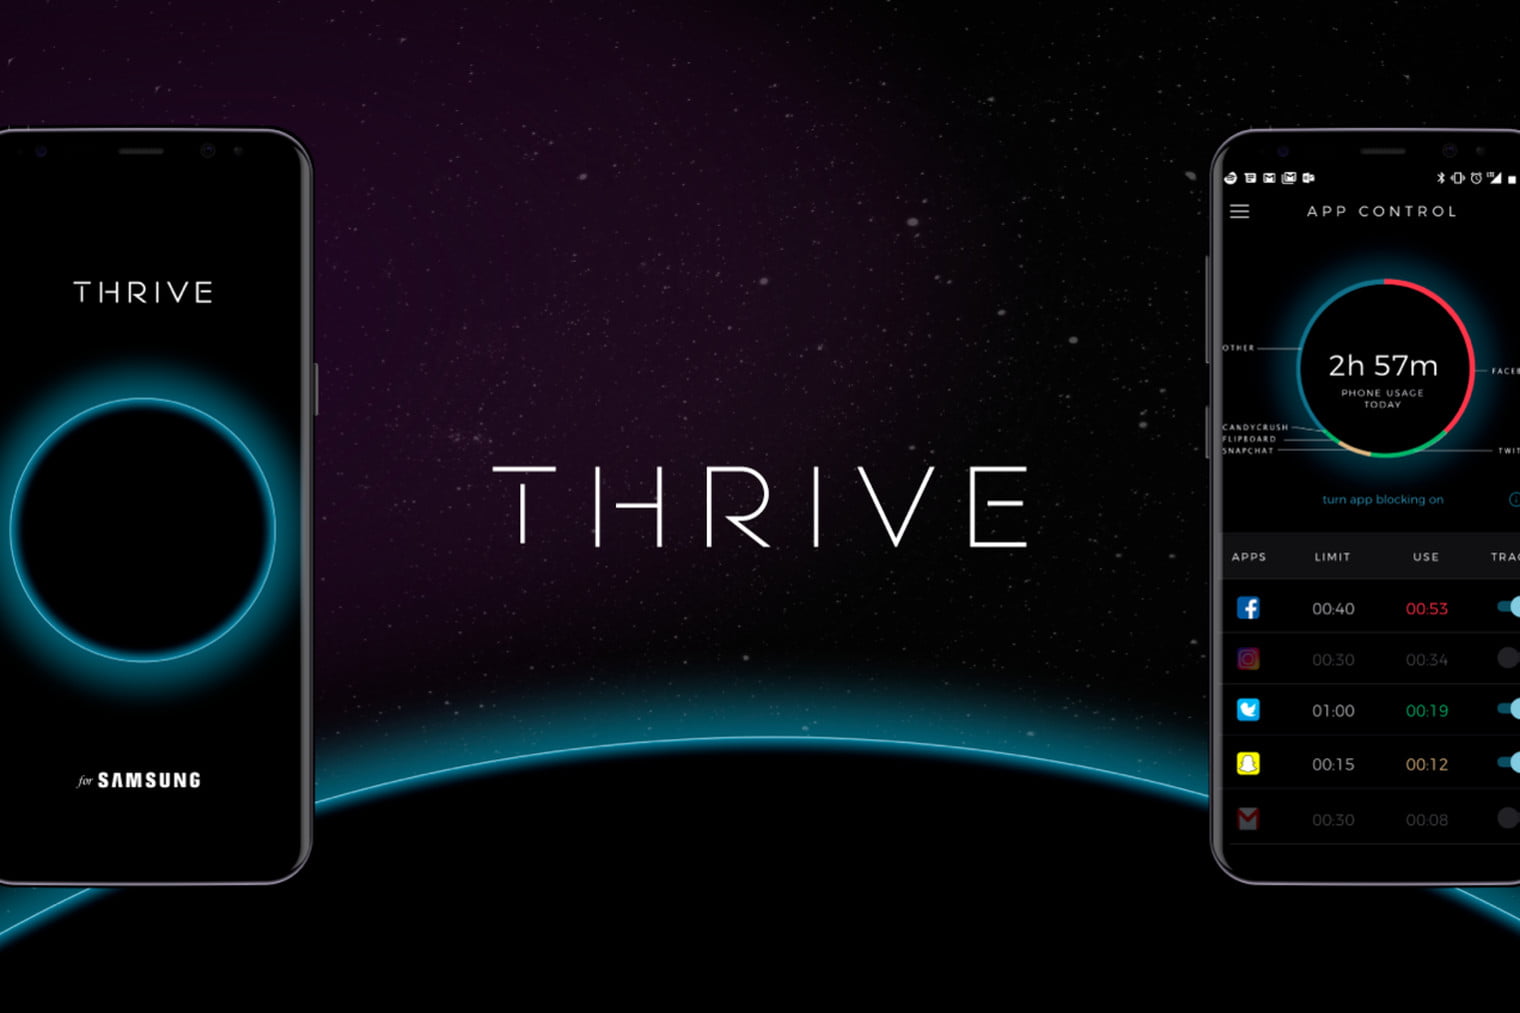 امکان کنترل راحت تر گوشی با برنامه جدید Thrive از آریانا هافینگتون